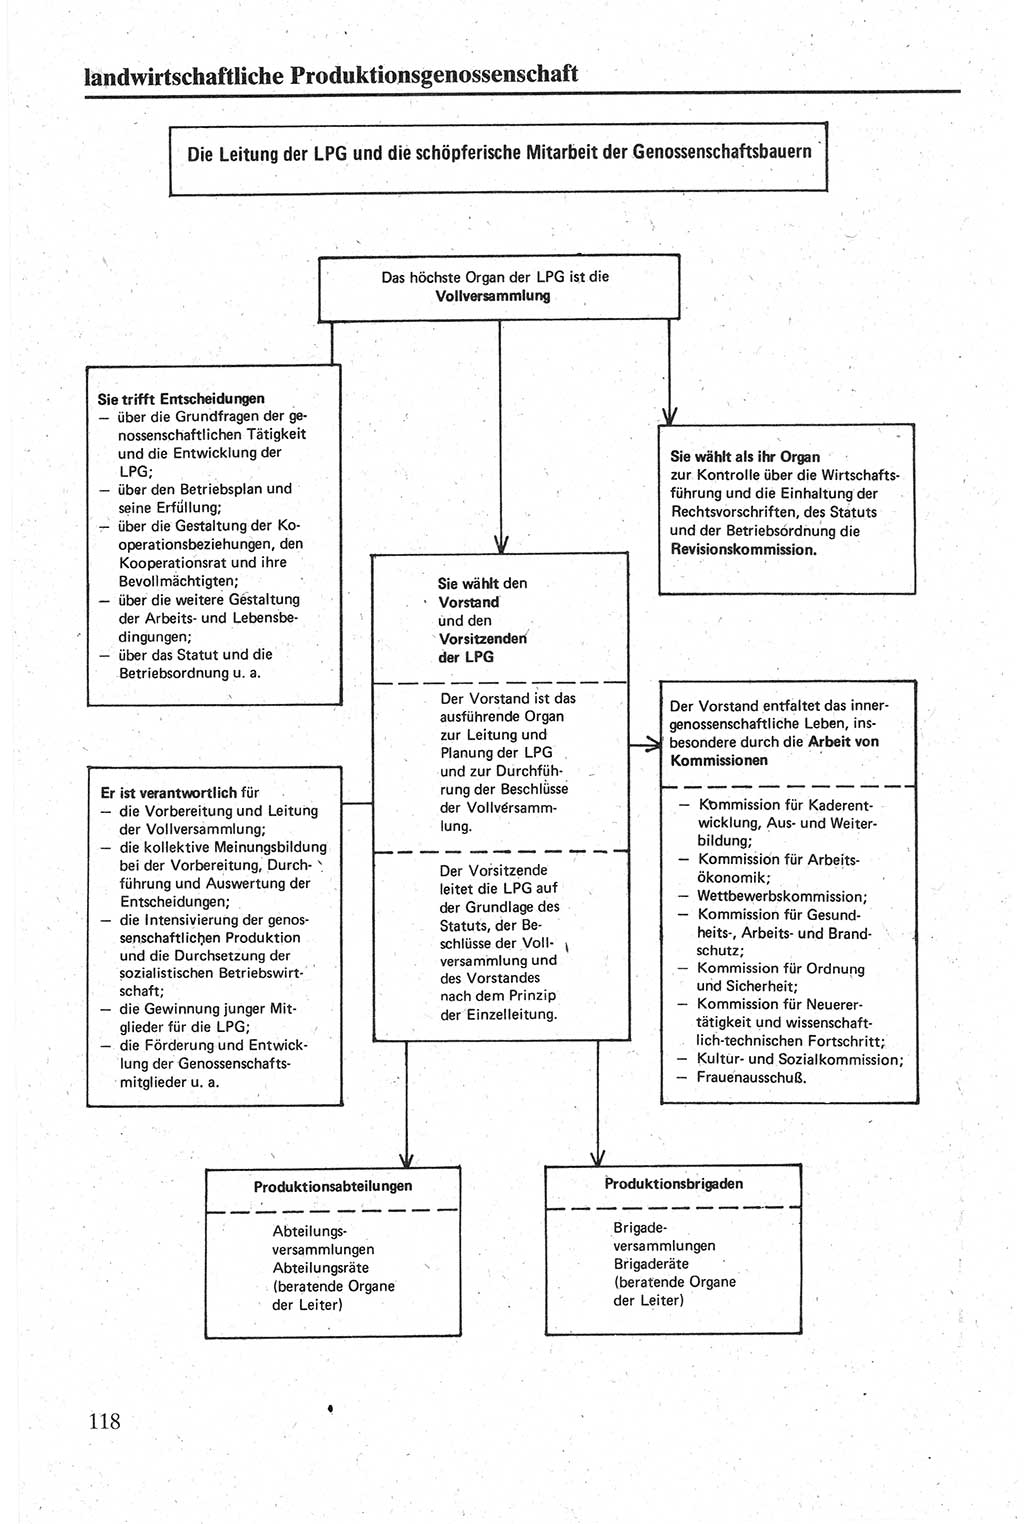 Handbuch für den Abgeordneten [Deutsche Demokratische Republik (DDR)] 1984, Seite 118 (Hb. Abg. DDR 1984, S. 118)